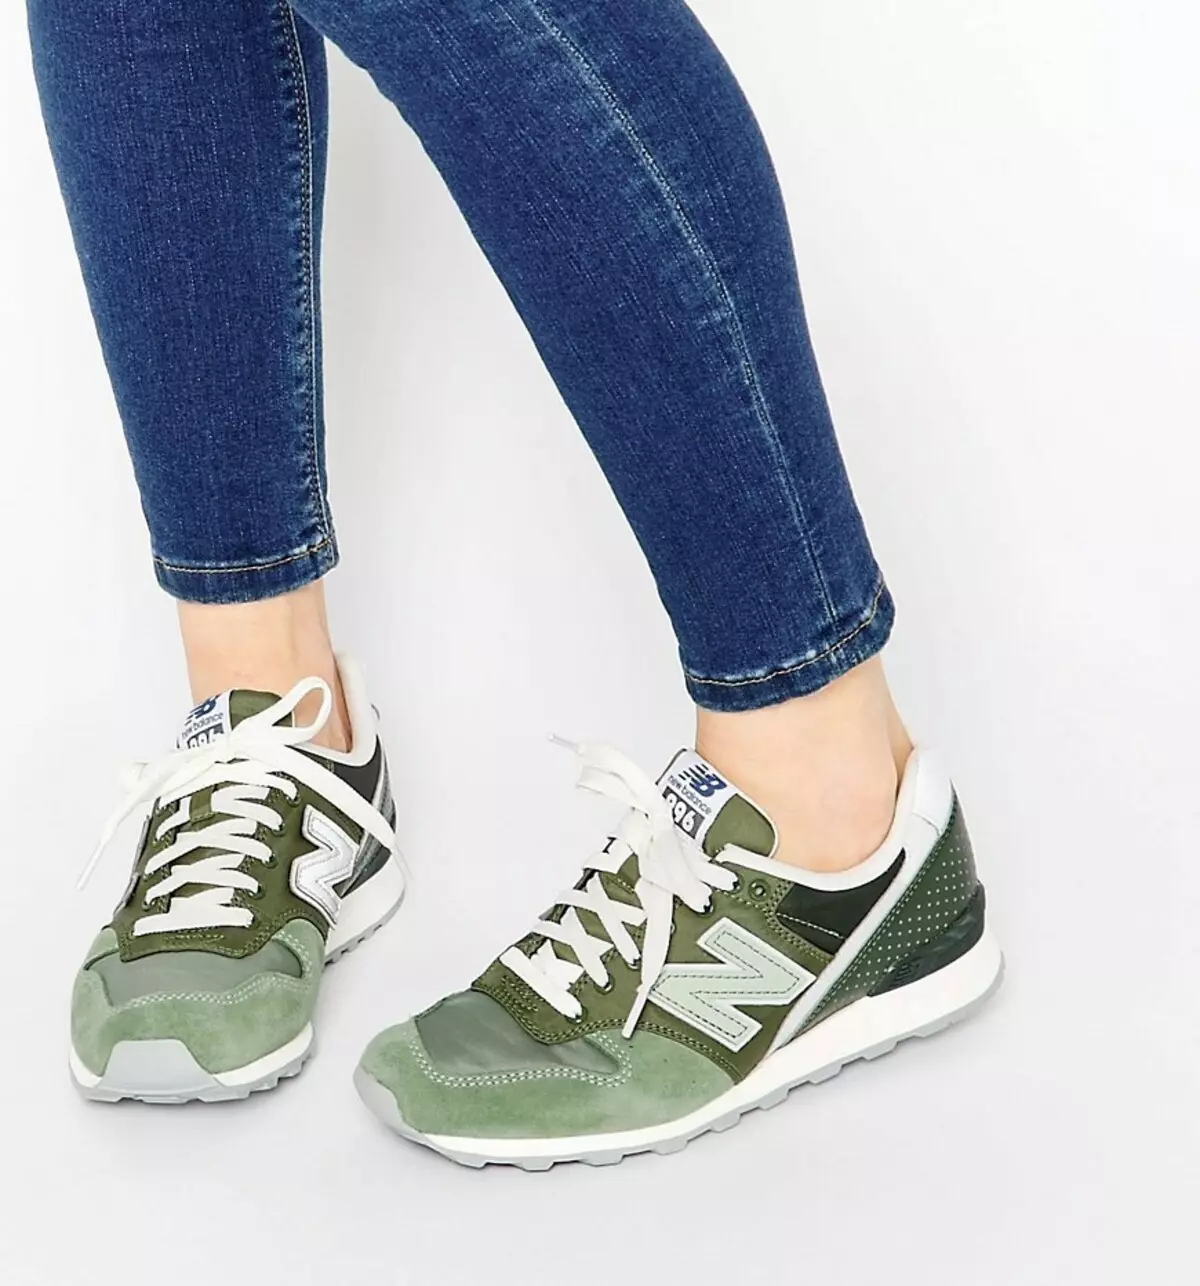 Green sneakers (foto 41): ụdị akwụkwọ ndụ akwụkwọ ndụ ụmụ nwanyị 2013_5